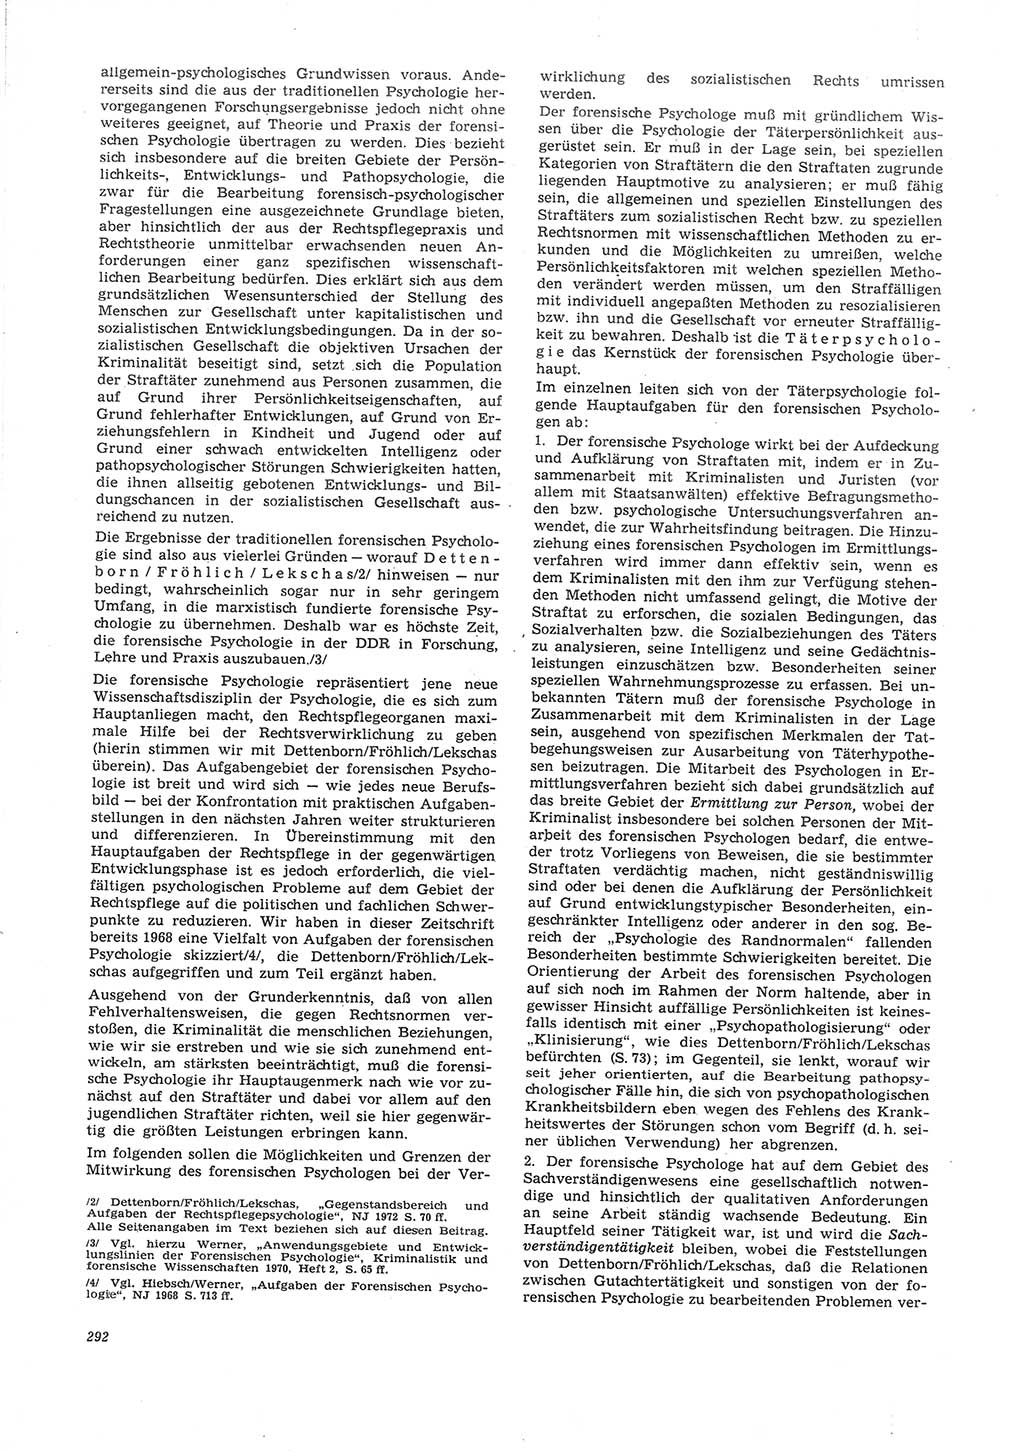 Neue Justiz (NJ), Zeitschrift für Recht und Rechtswissenschaft [Deutsche Demokratische Republik (DDR)], 26. Jahrgang 1972, Seite 292 (NJ DDR 1972, S. 292)